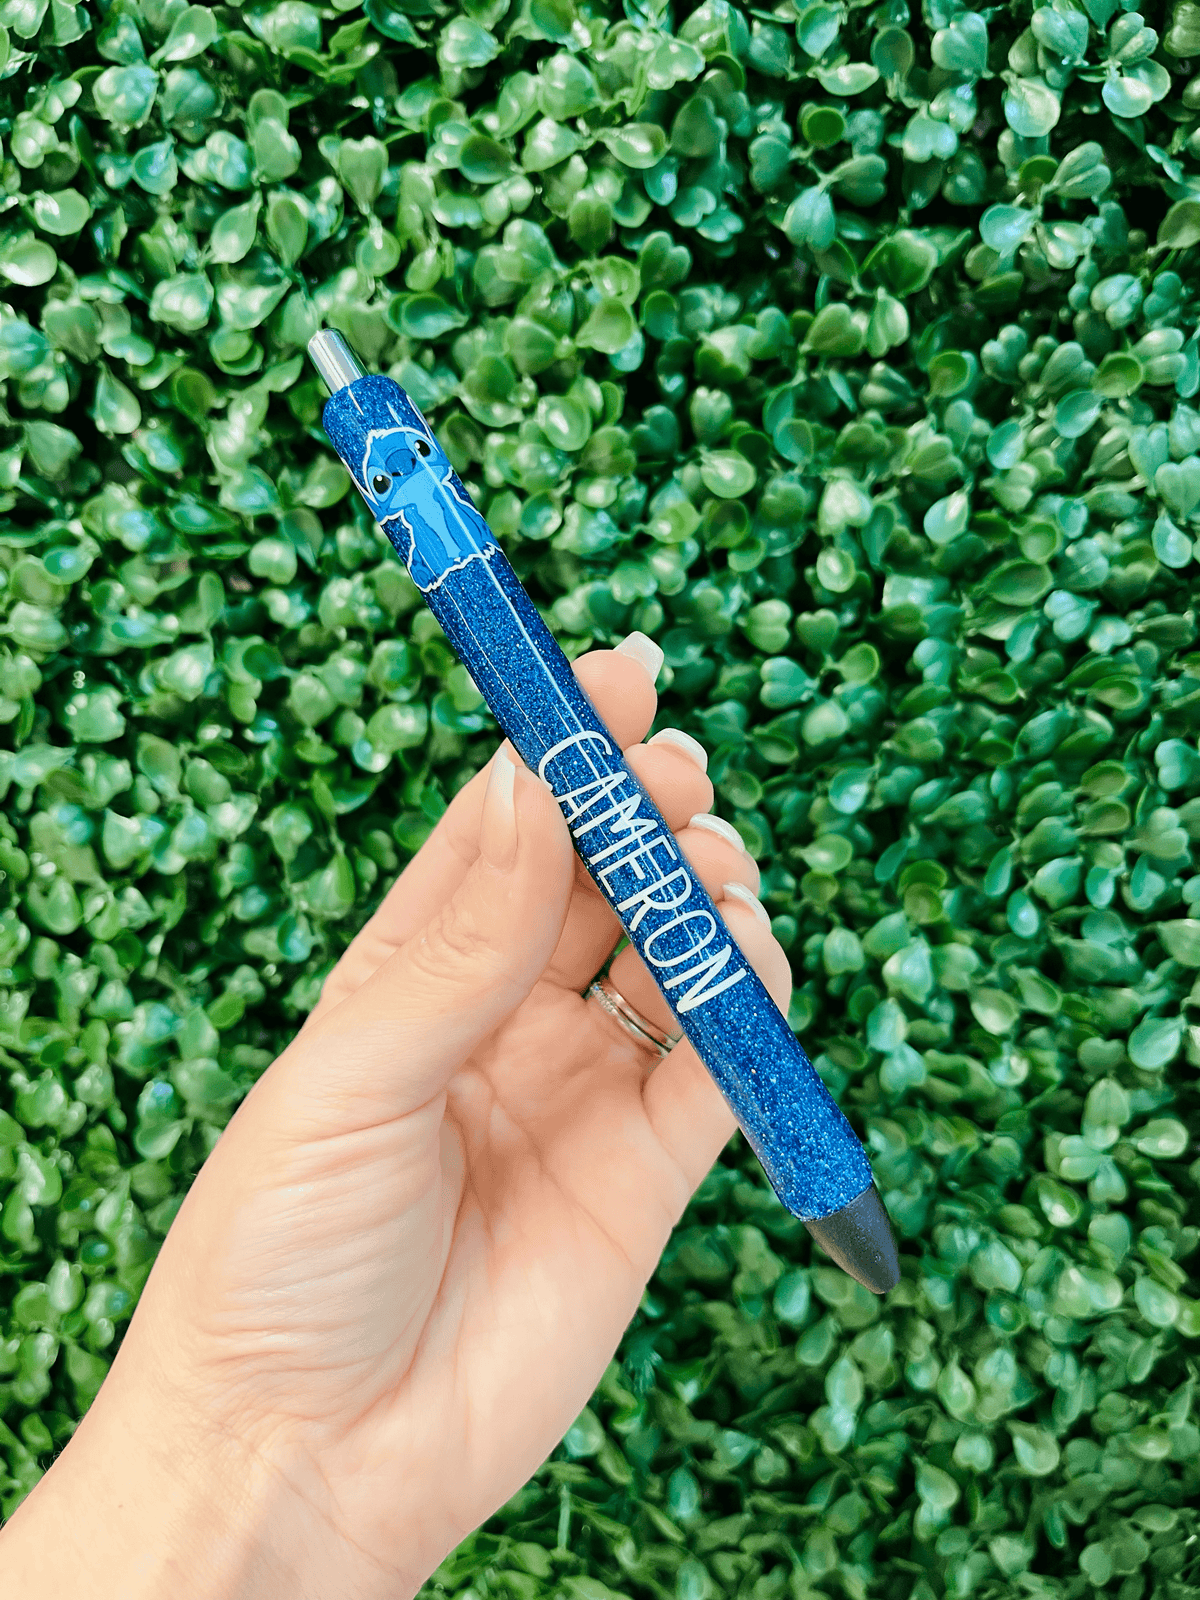 Alien Personalized Glitter Pen